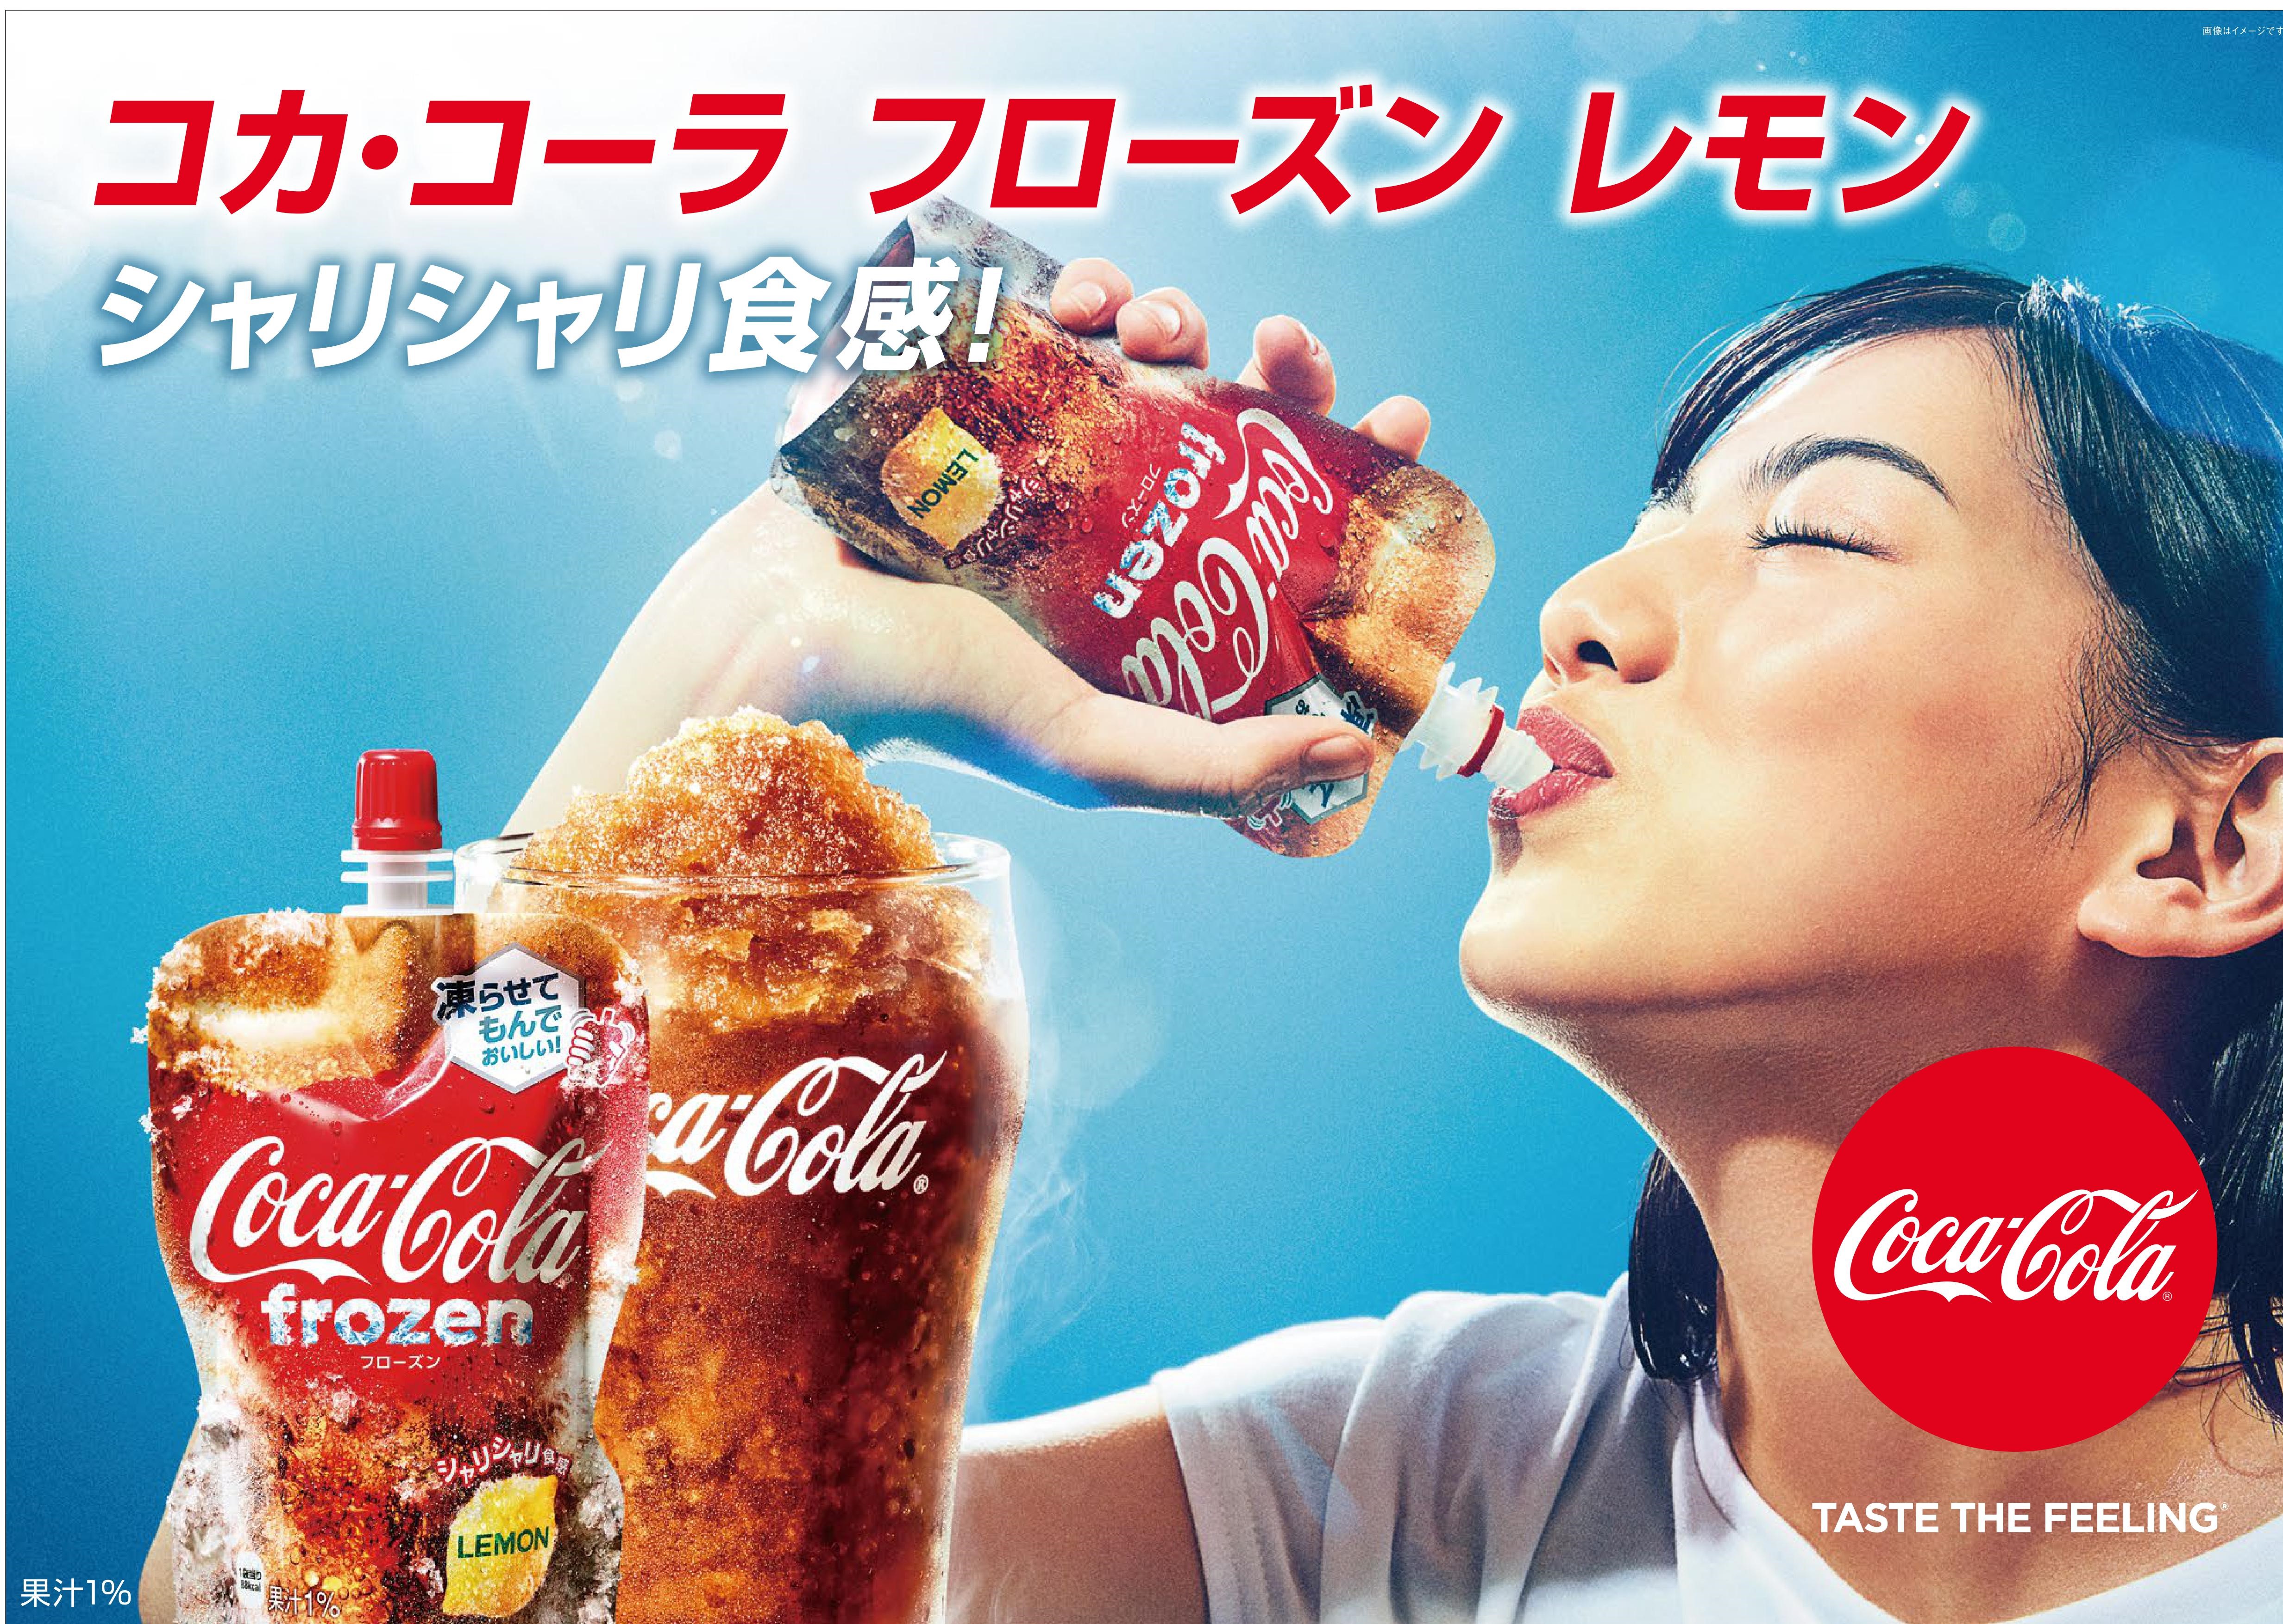 ついに復活 夏にぴったりの冷たさとシャリシャリ食感が楽しめる コカ コーラ フローズンレモン 3月30日 月 から発売 日本コカ コーラ 株式会社のプレスリリース